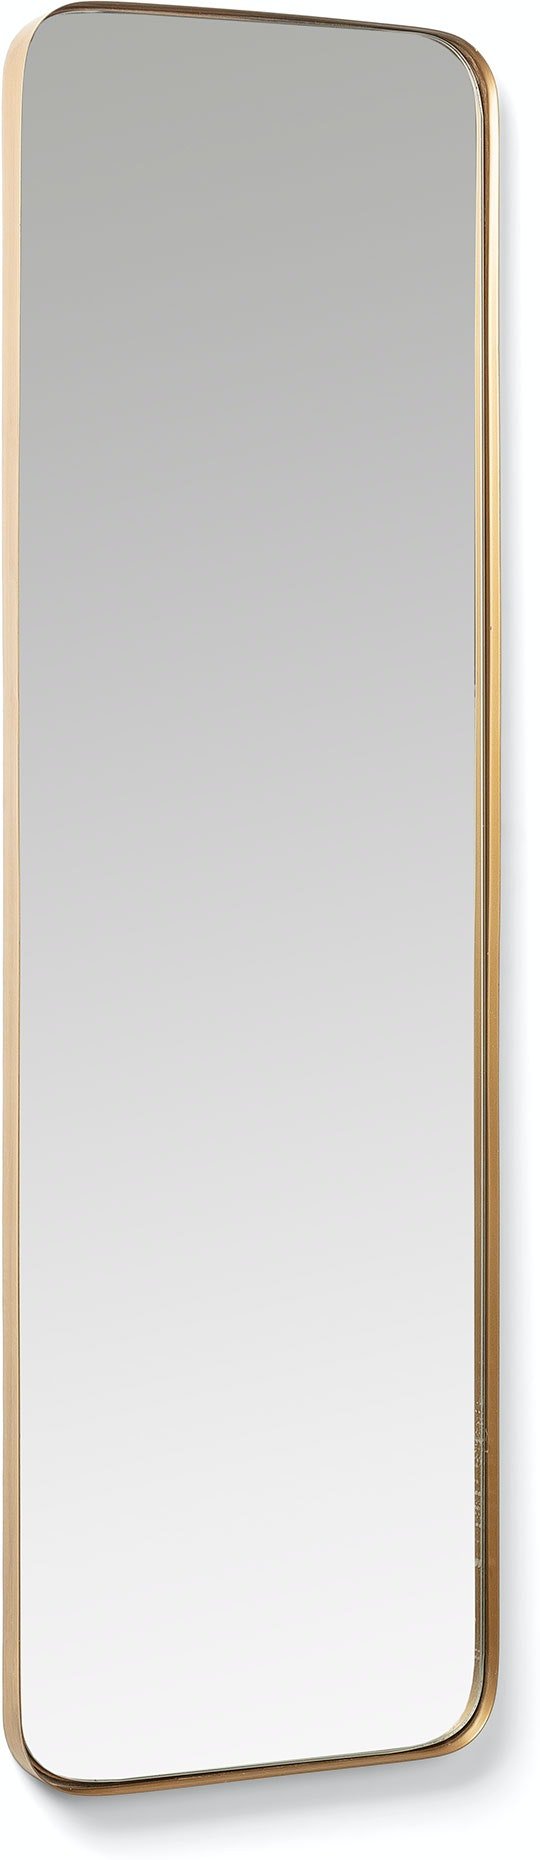 Marco, Vægspejl by LaForma (H: 100 cm. B: 30 cm. L: 3 cm., Guld)